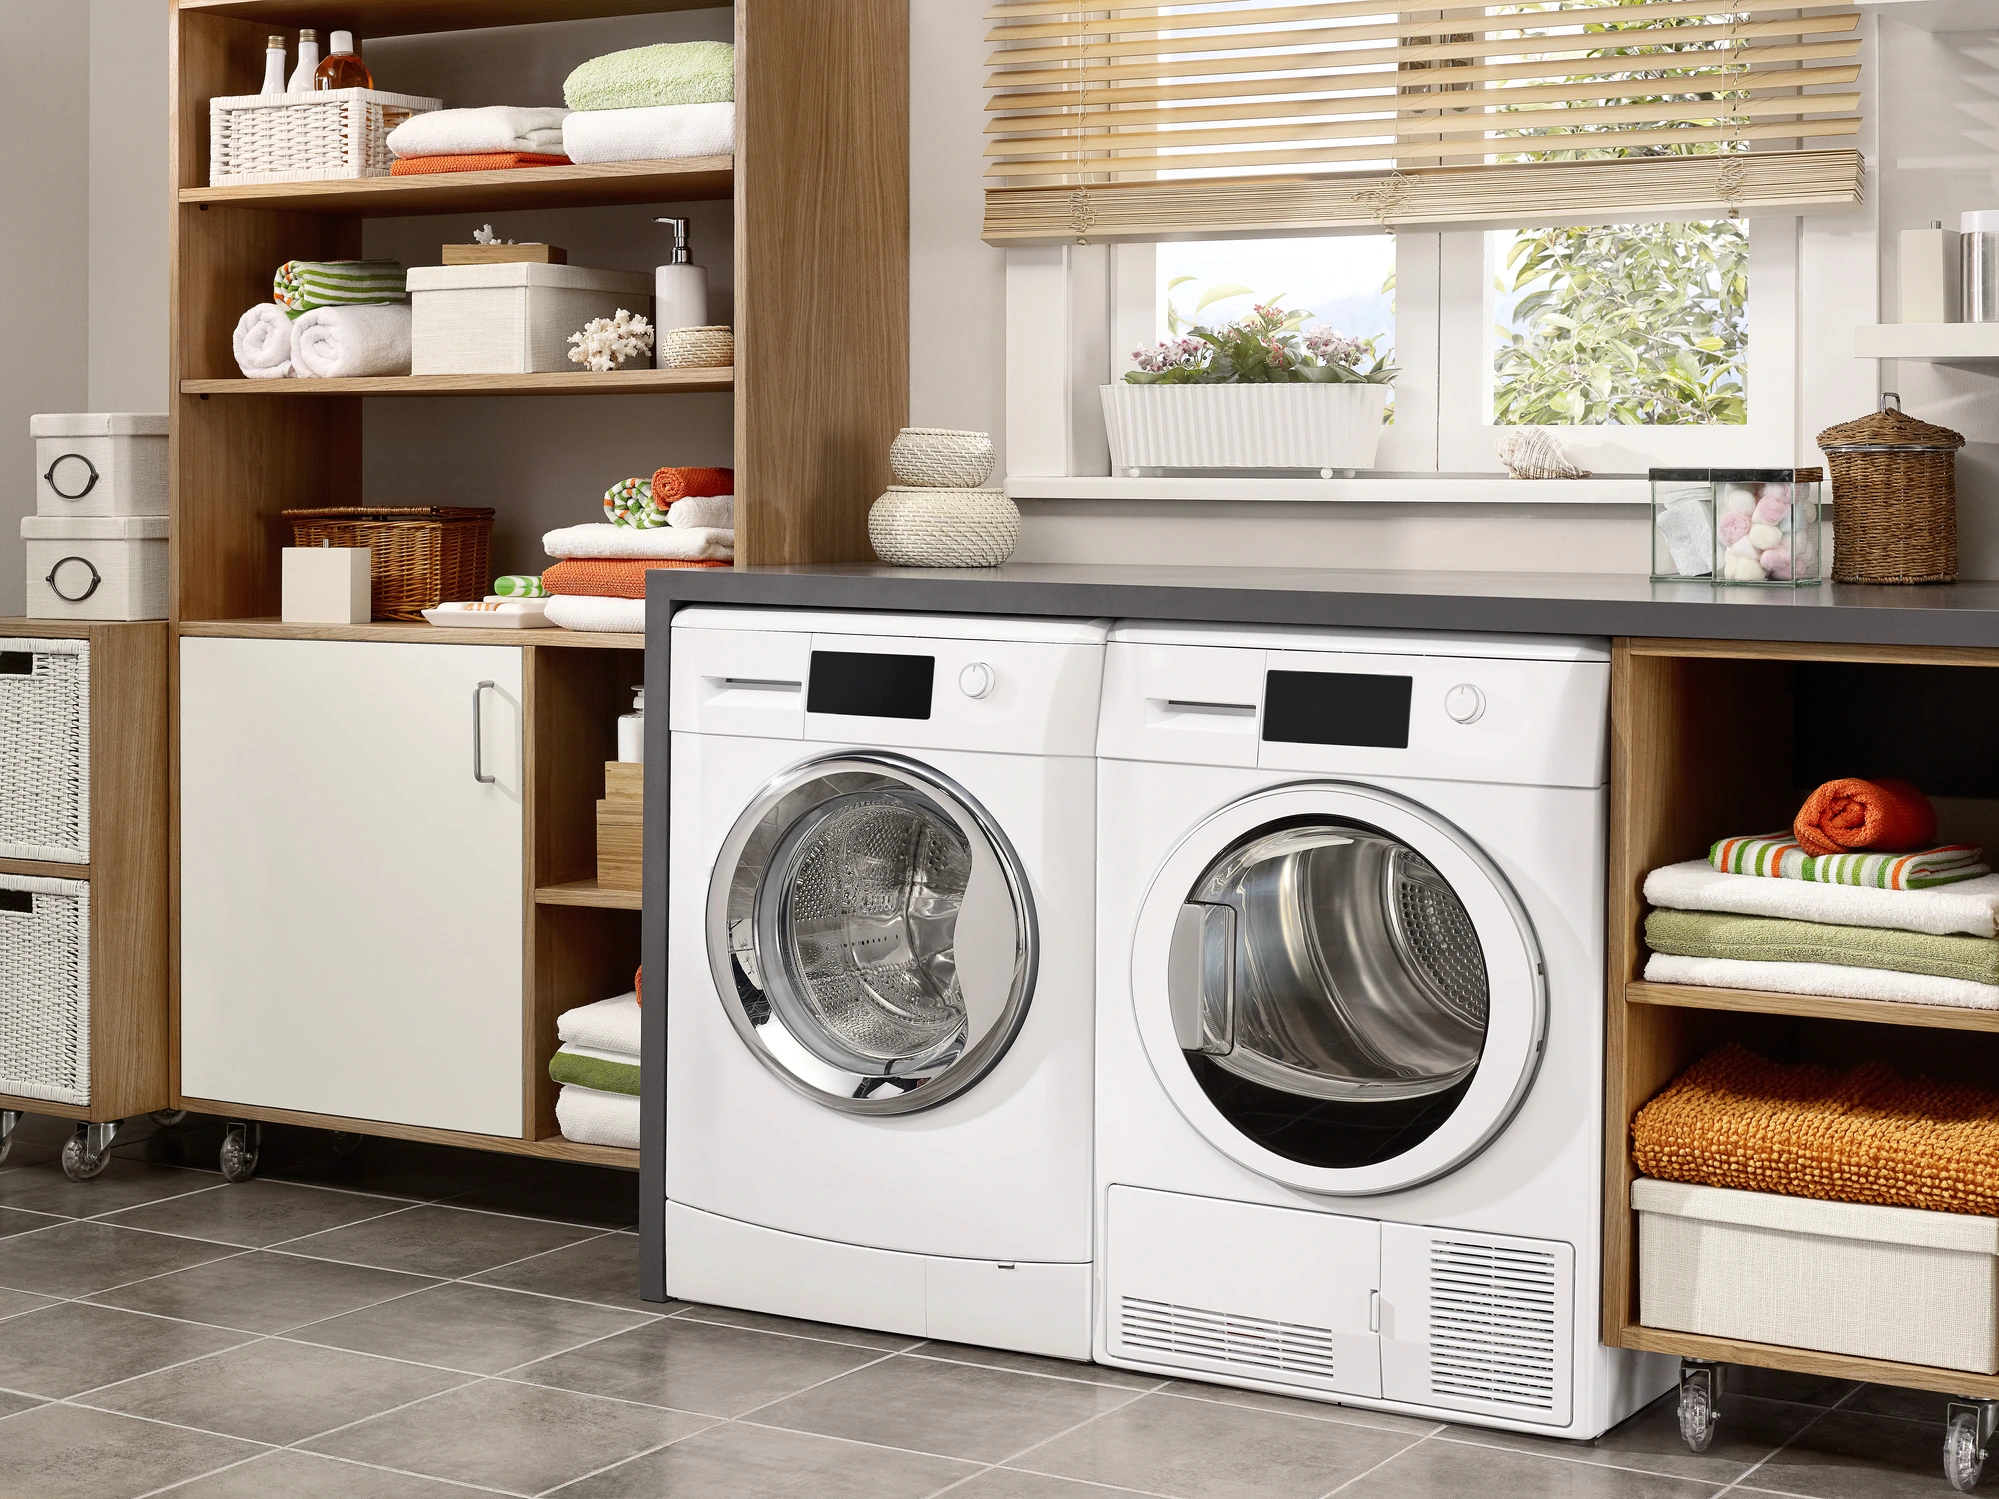 Mã Lỗi E34 trên máy giặt Electrolux sửa nhanh rẻ đơn giản tại nhà